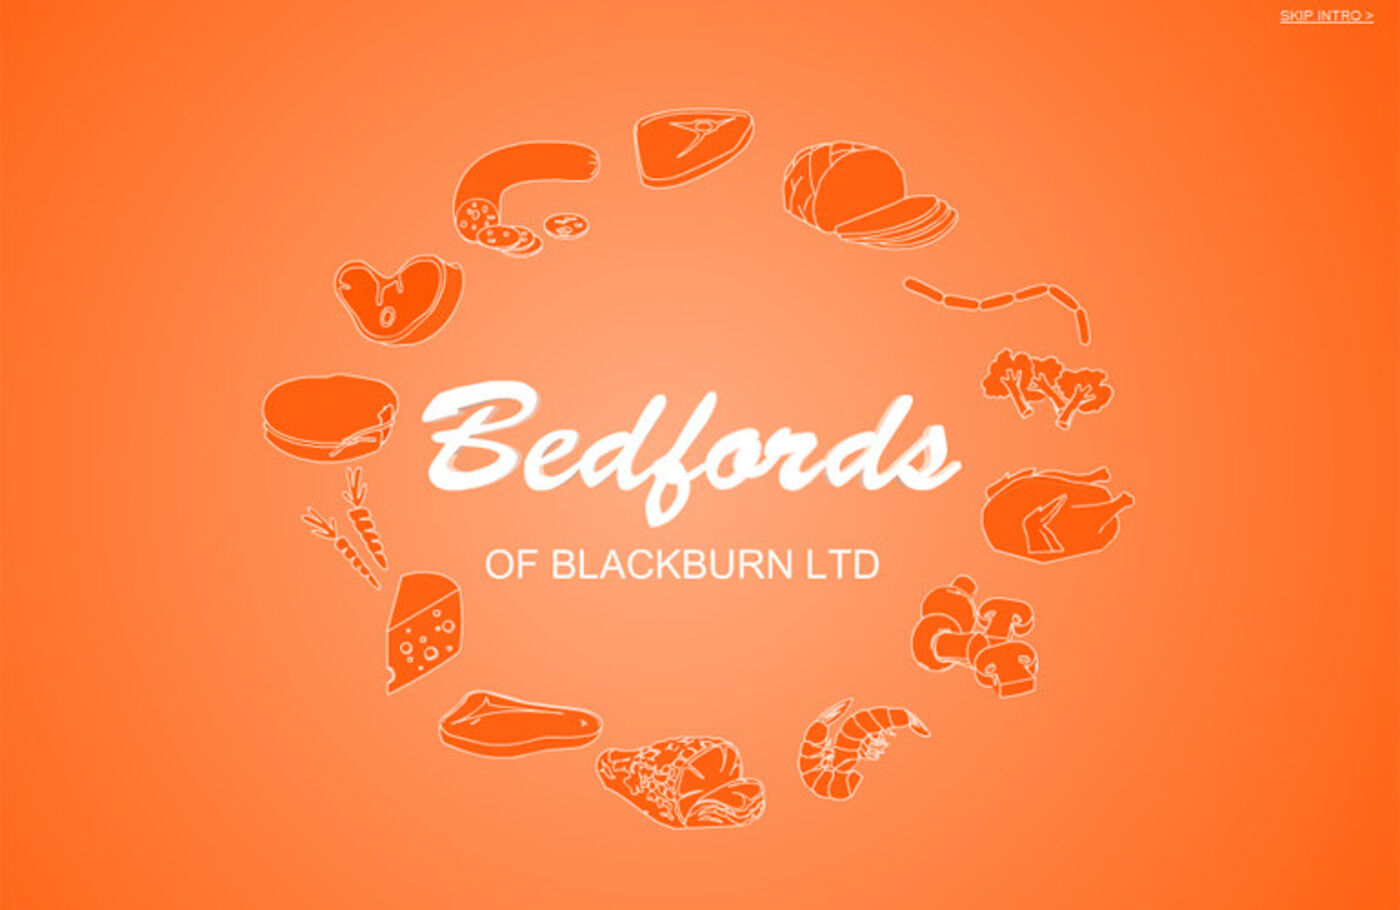 Bedfords of Blackburn Ltd Welcome